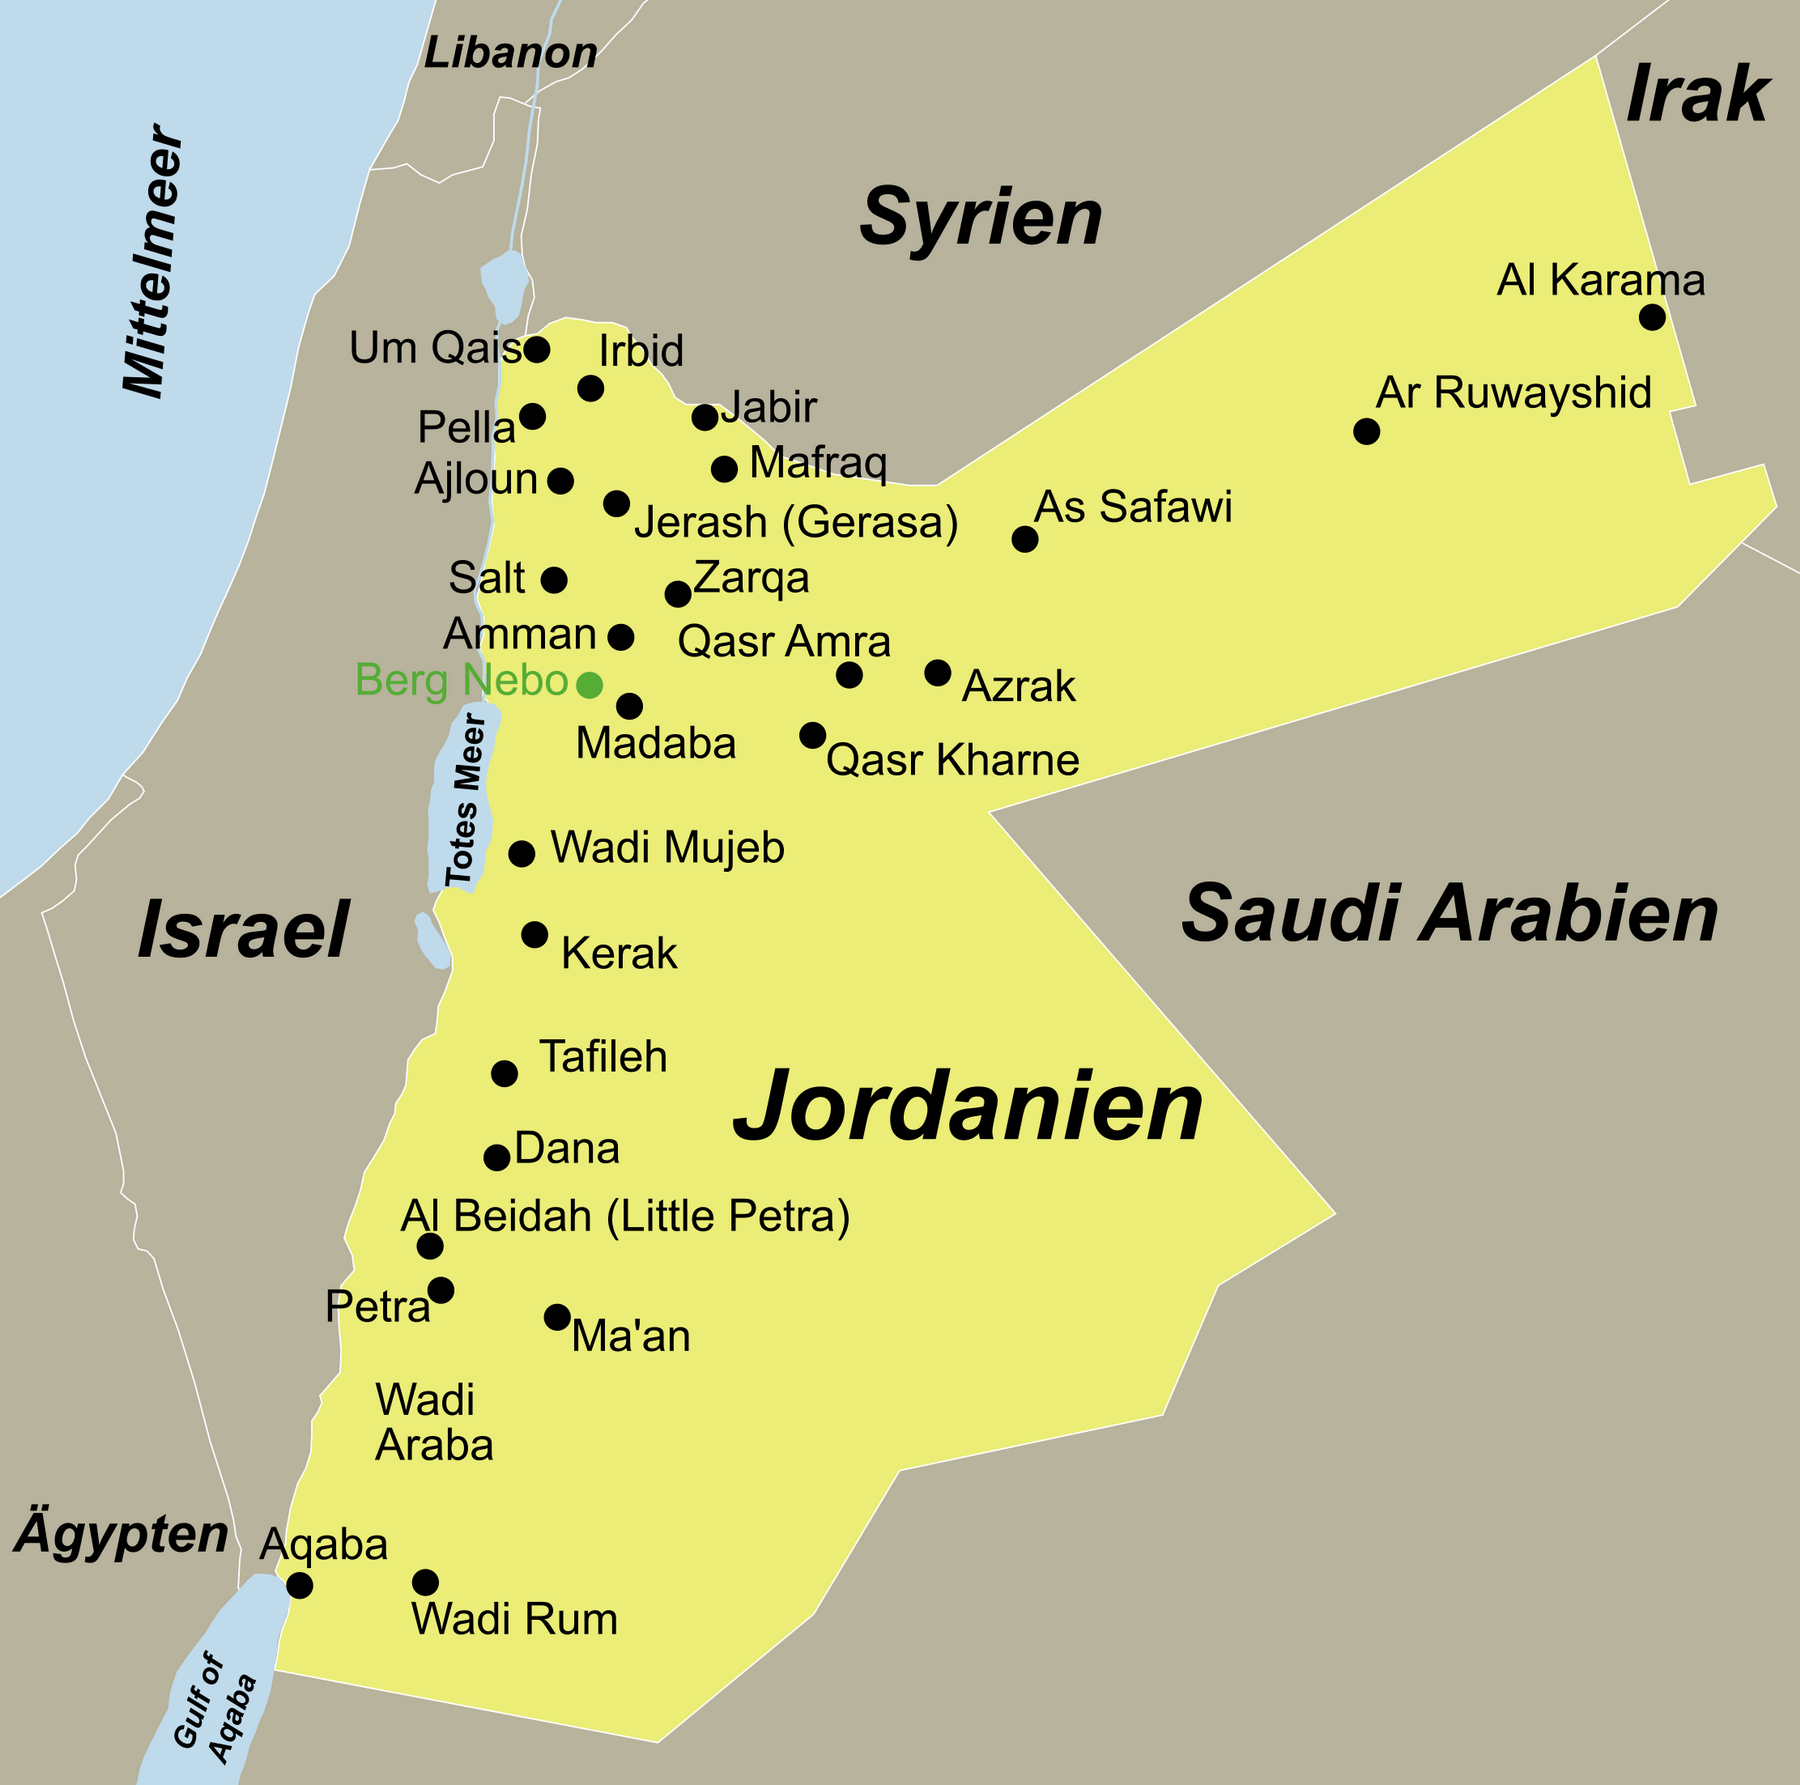 Jordanien Traumurlaub anspruchsvoll mit dem Reiseveranstalter reisefieber planen und reisen.